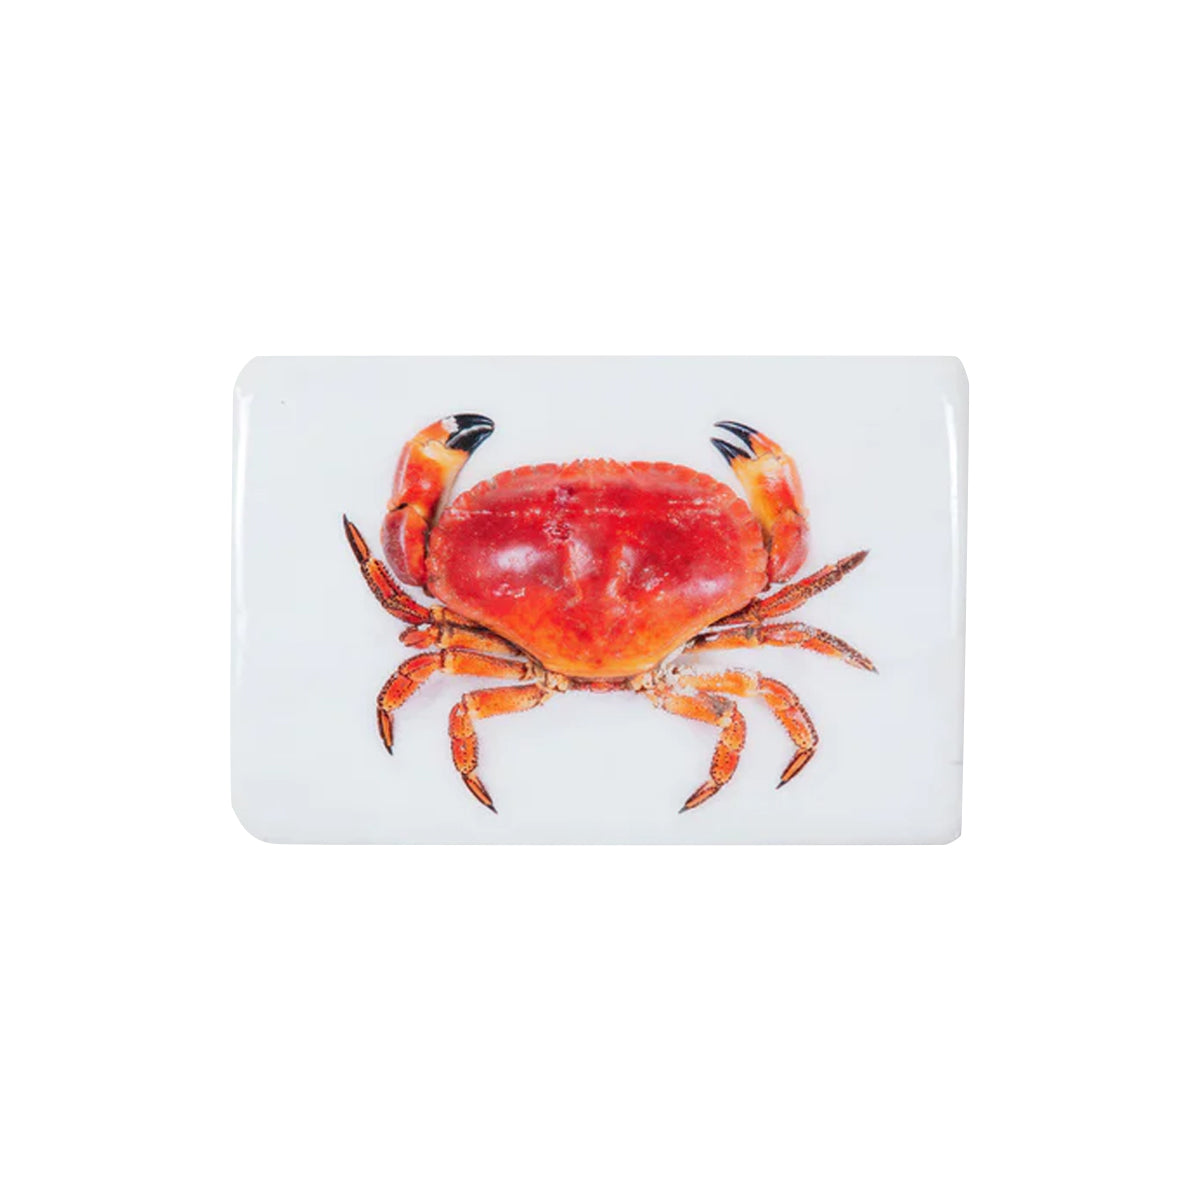 crabe portugais - 29 x 20 cm - stigerwoods